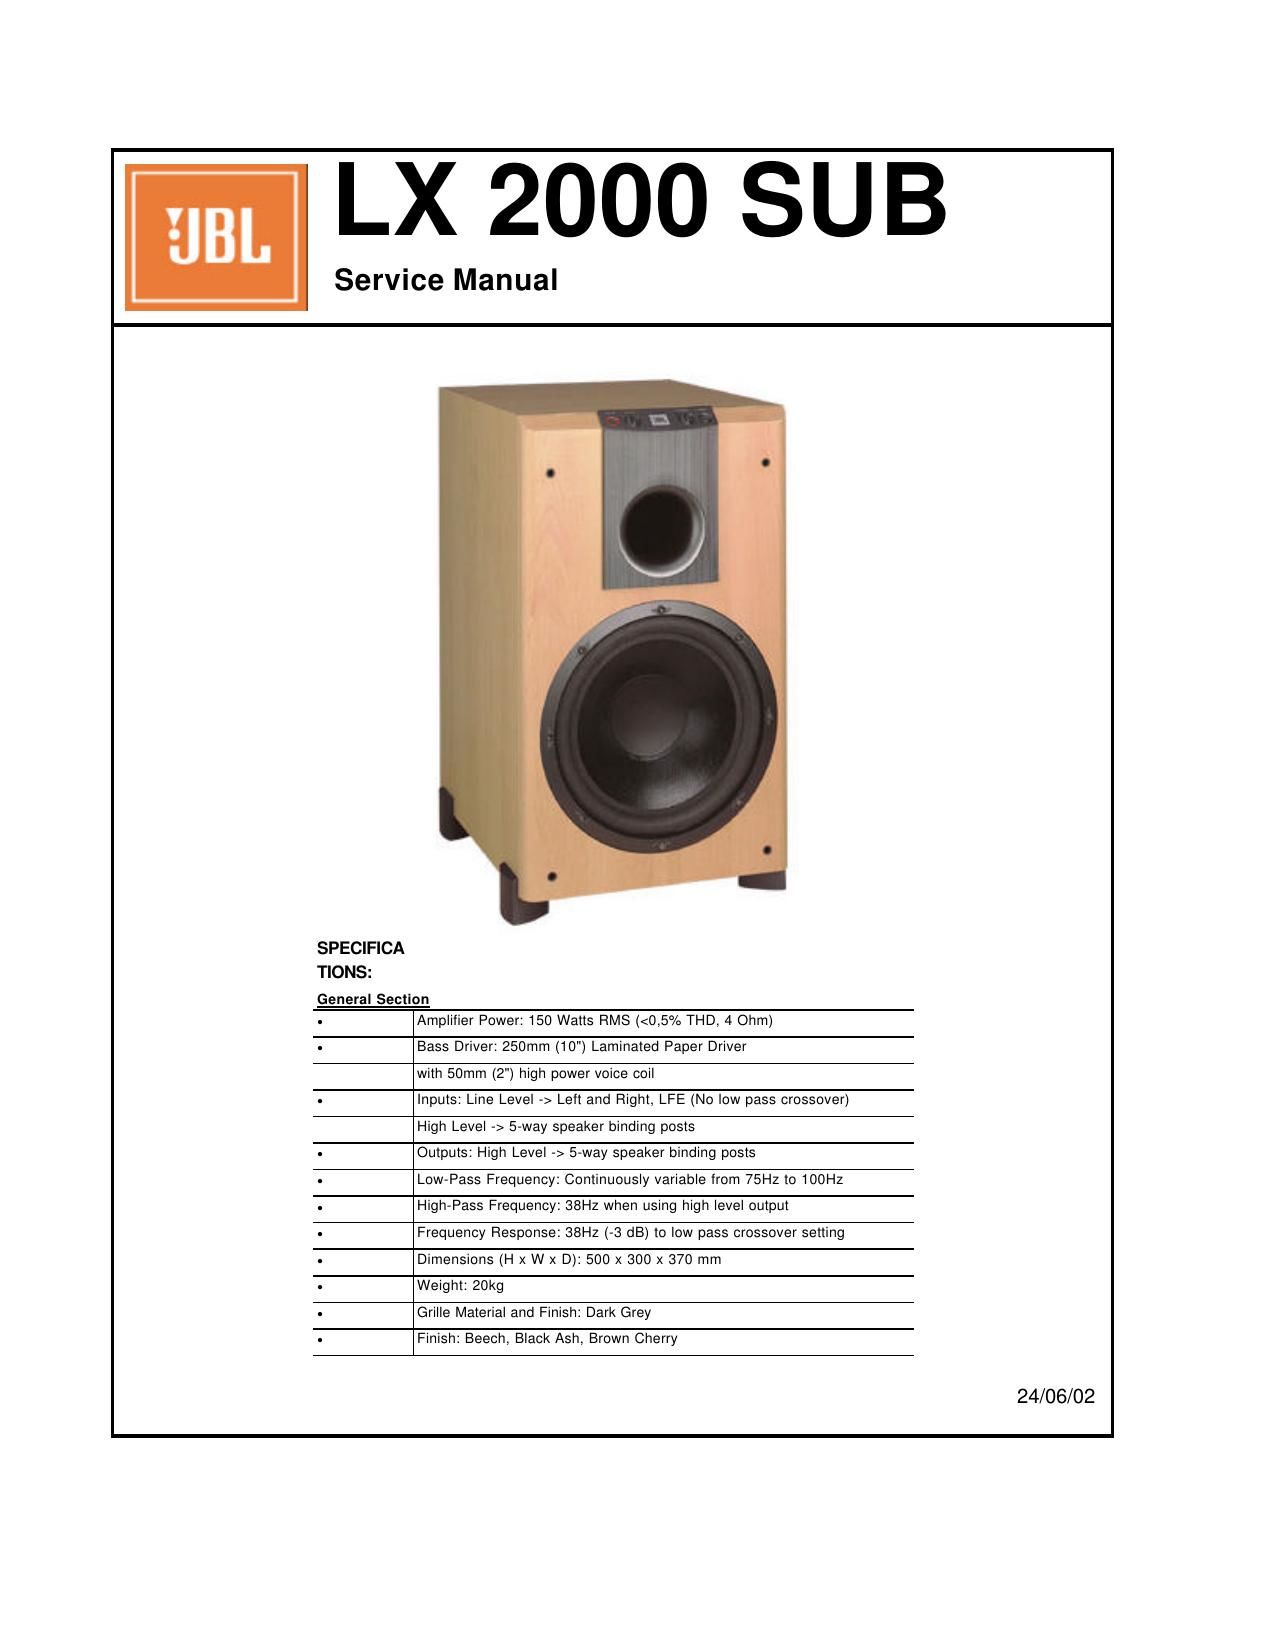 JBL LX 2000 SUB Service Manual